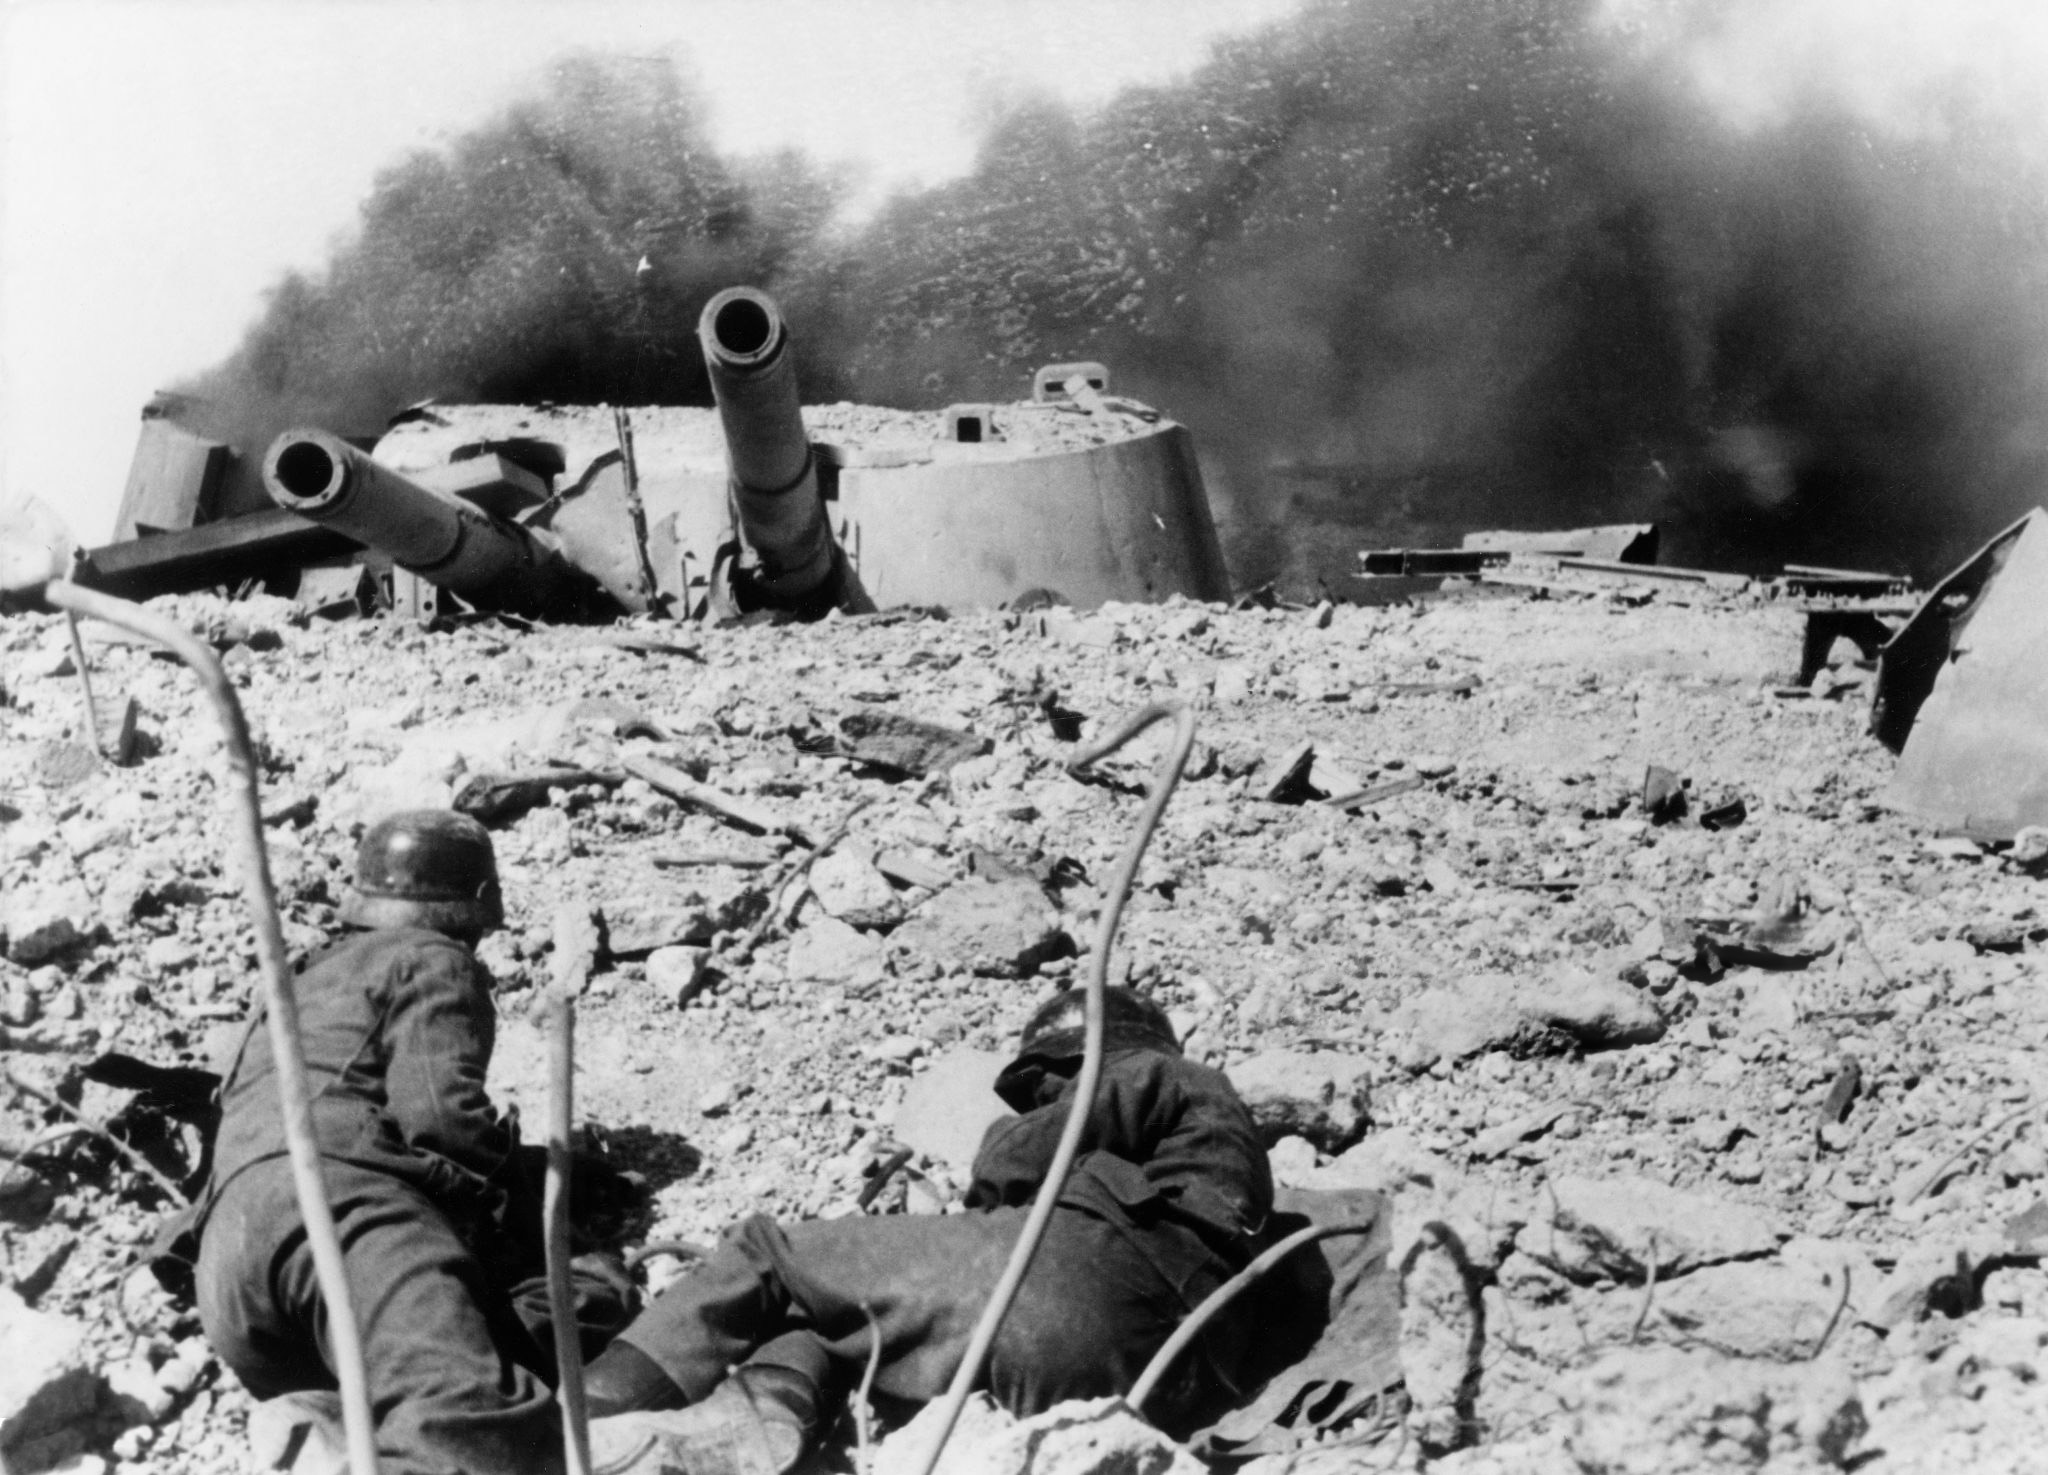 Немецкие солдаты в бою в районе 30-й батареи Севастополя. В кадре горящая башенная артиллерийская установка МБ-2-12 №2. Немцам так и не удалось подавить наши батареи ни артиллерийским огнем, ни с помощью авиации. 1 июля 1942 года 35-я батарея выпустила последние 6 снарядов прямой наводкой по наступающей пехоте противника, и в ночь на 2 июля командир батареи капитан Лещенко организовал подрыв батаре